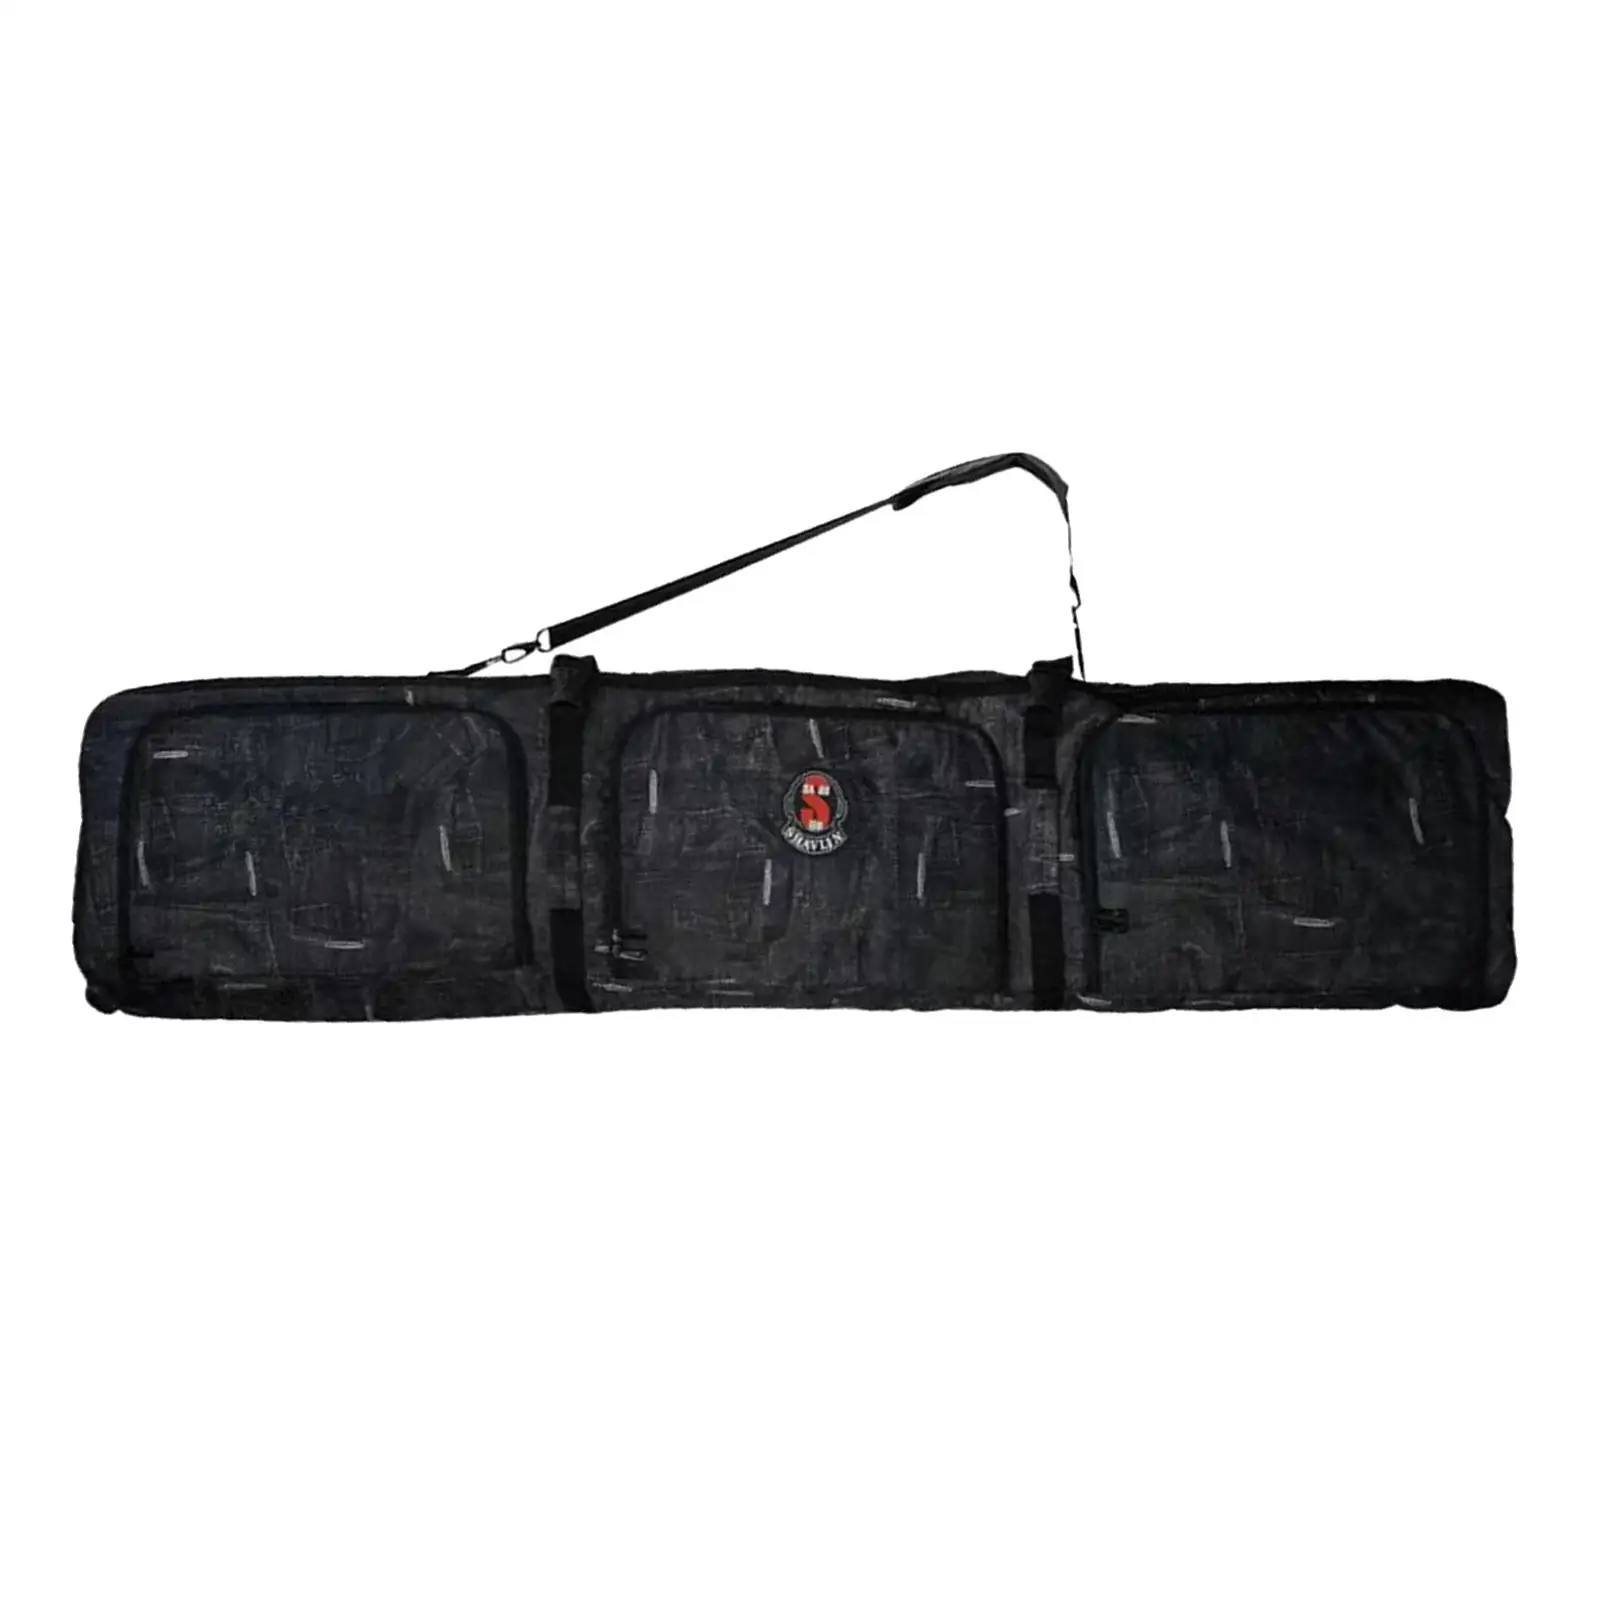 Snowboard Bag with Wheels Adjustable Shoulder Strap Handbag for Air Travel